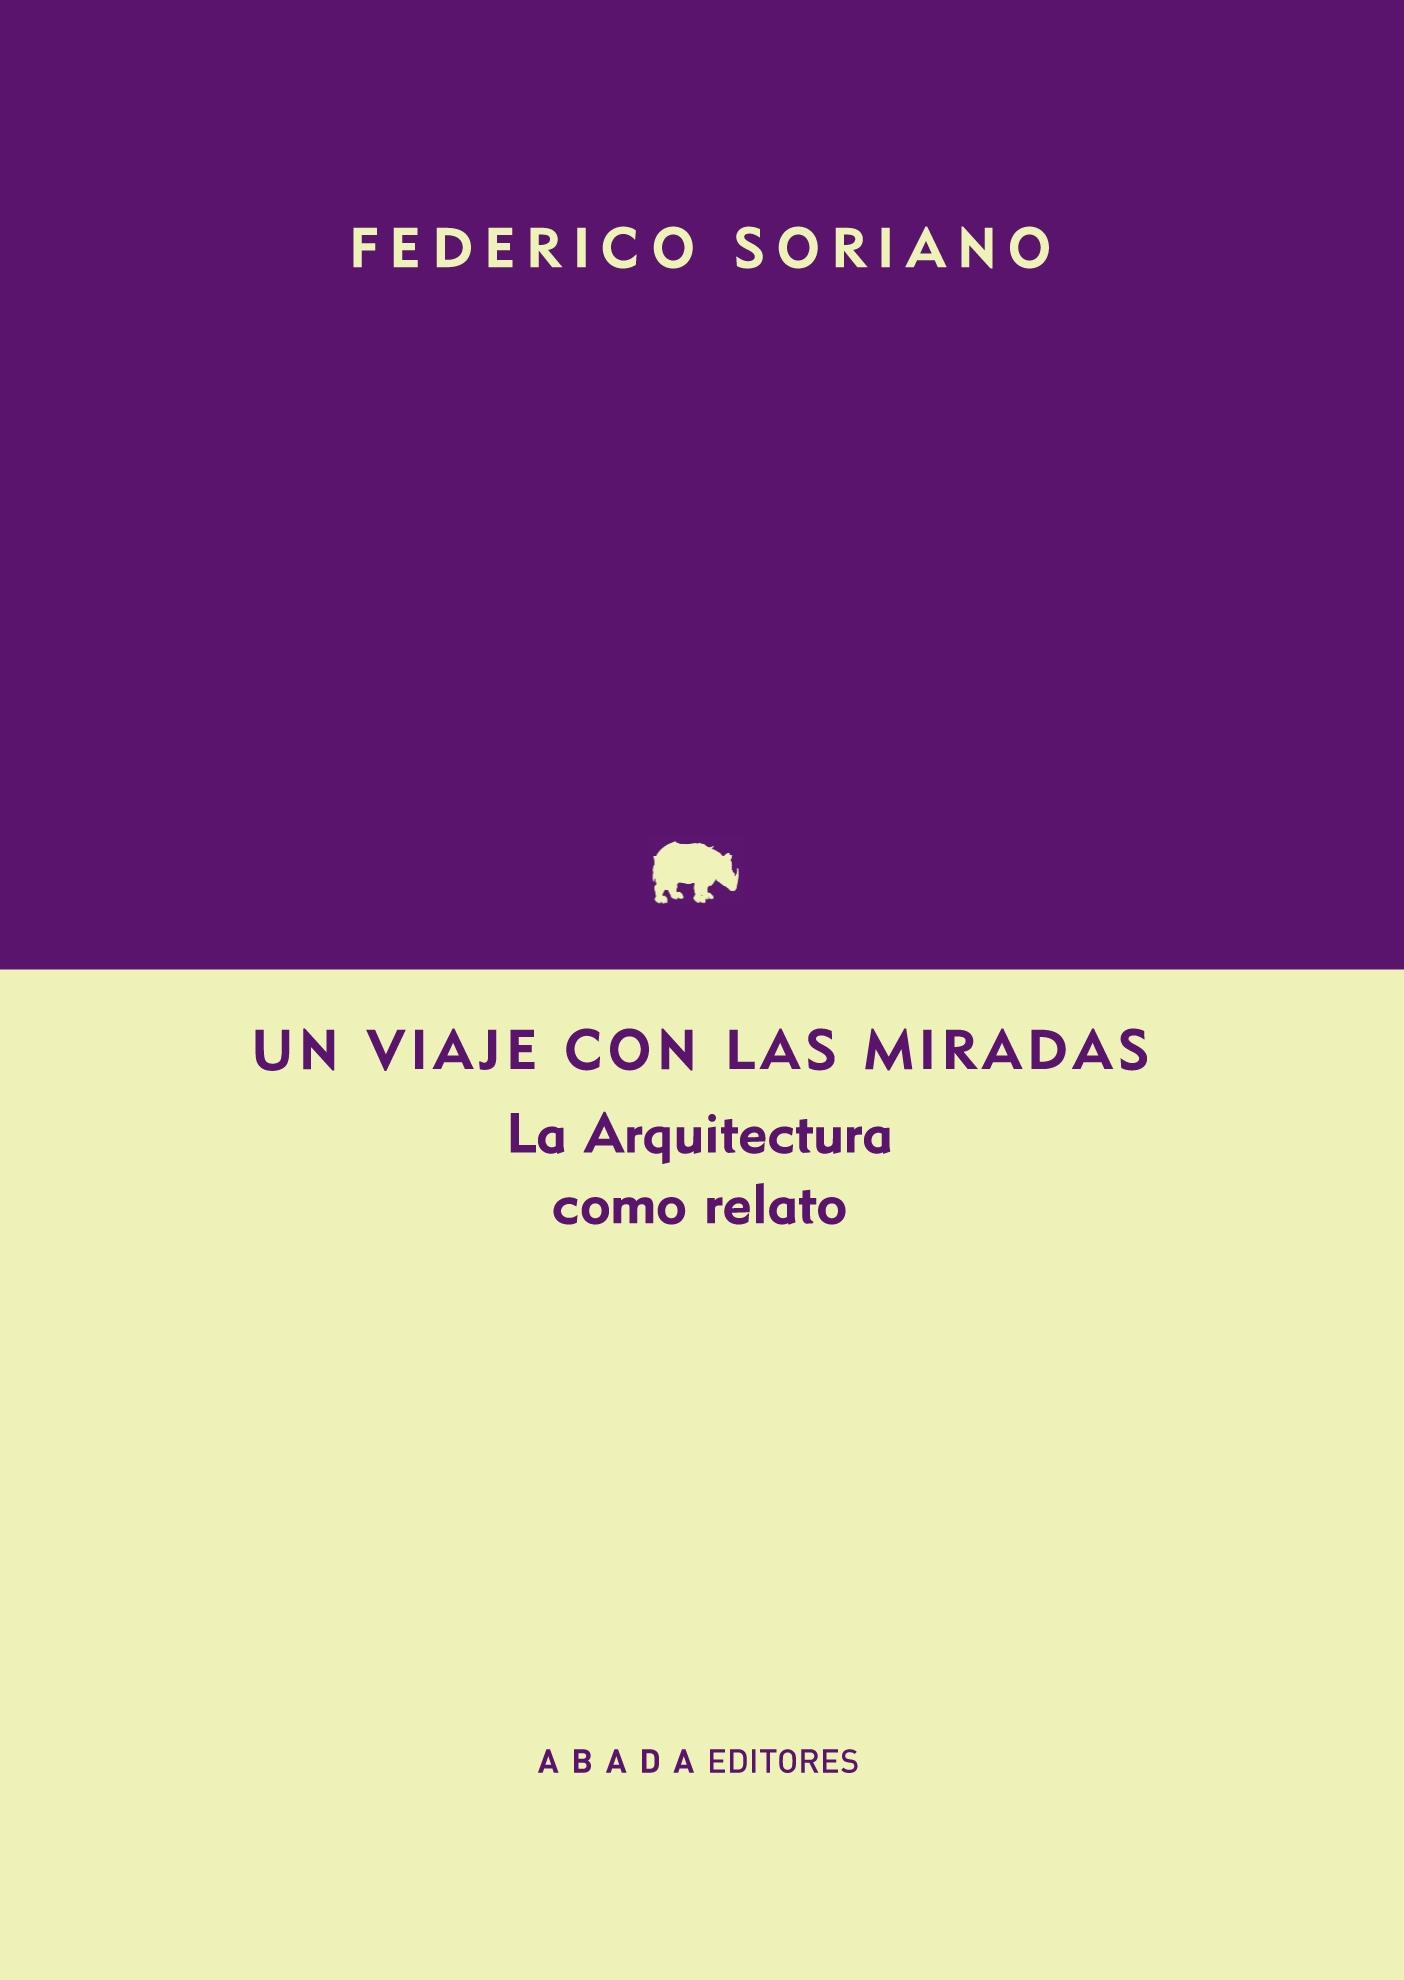 Un Viaje con las Miradas "La Arquitectura como Relato". 